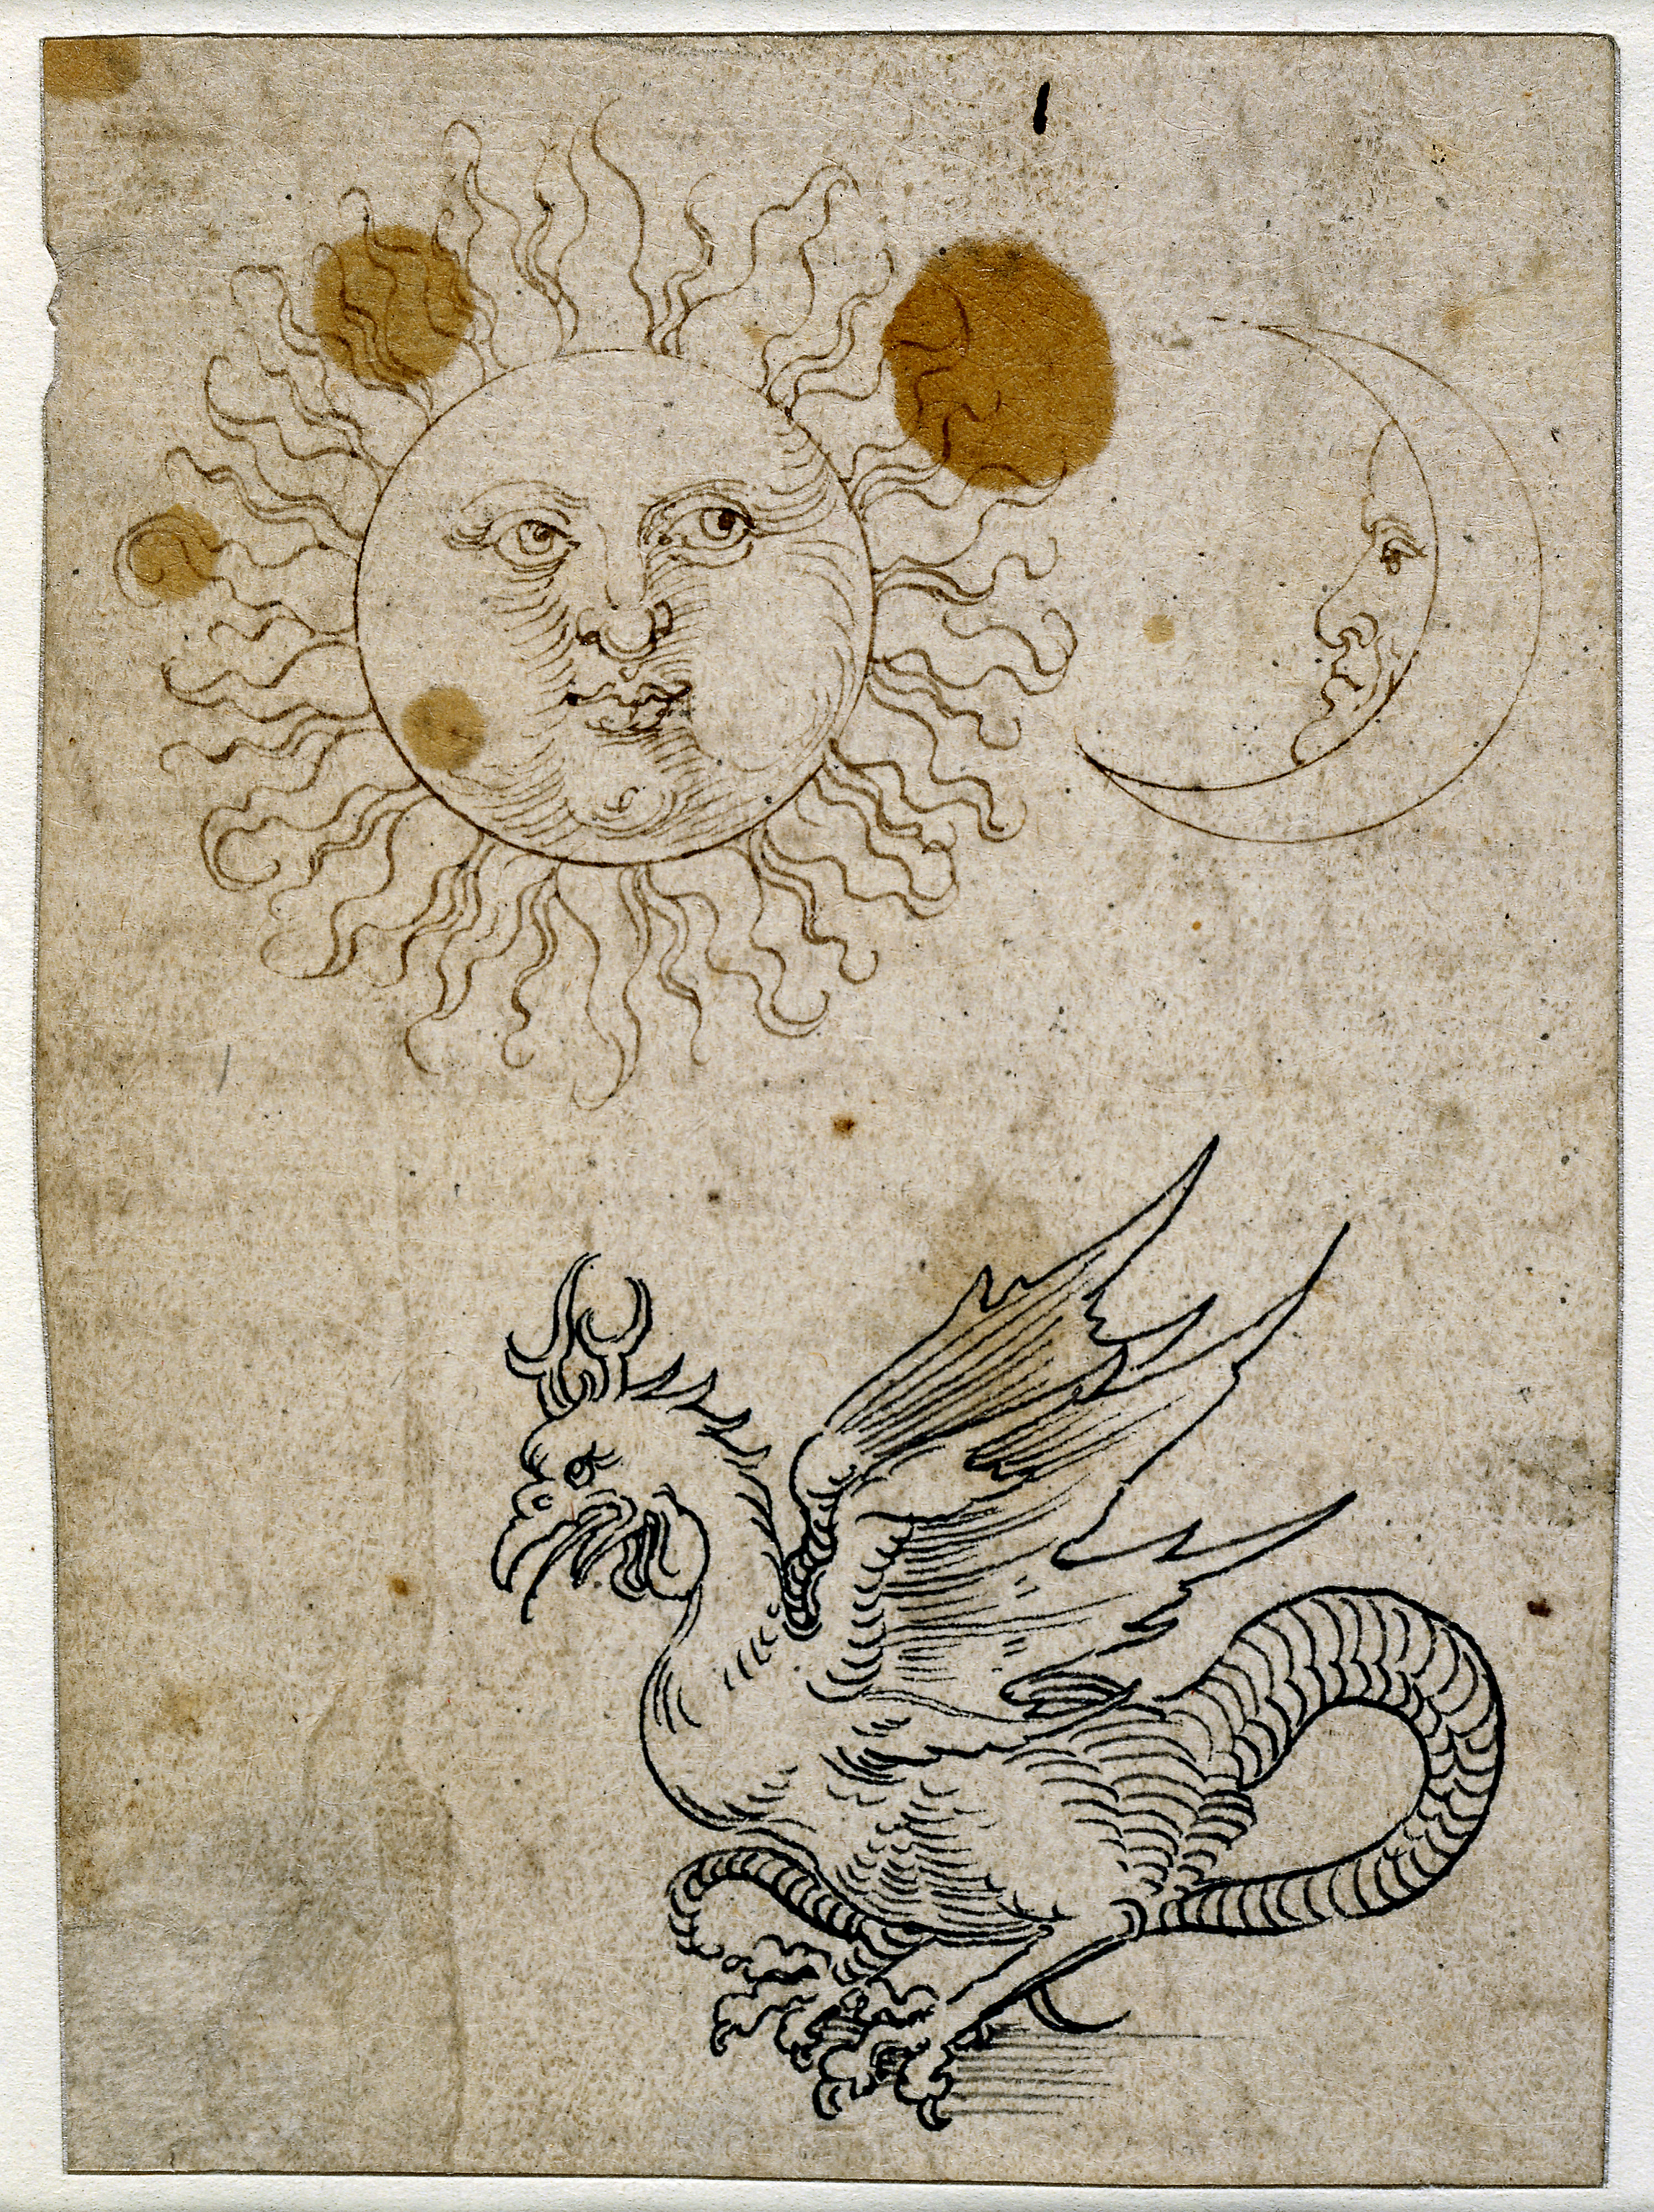 Sonne, Mond und ein Basilisk by Albrecht Dürer - 1507 - 1519 - 11,8 x 8,6 cm British Museum